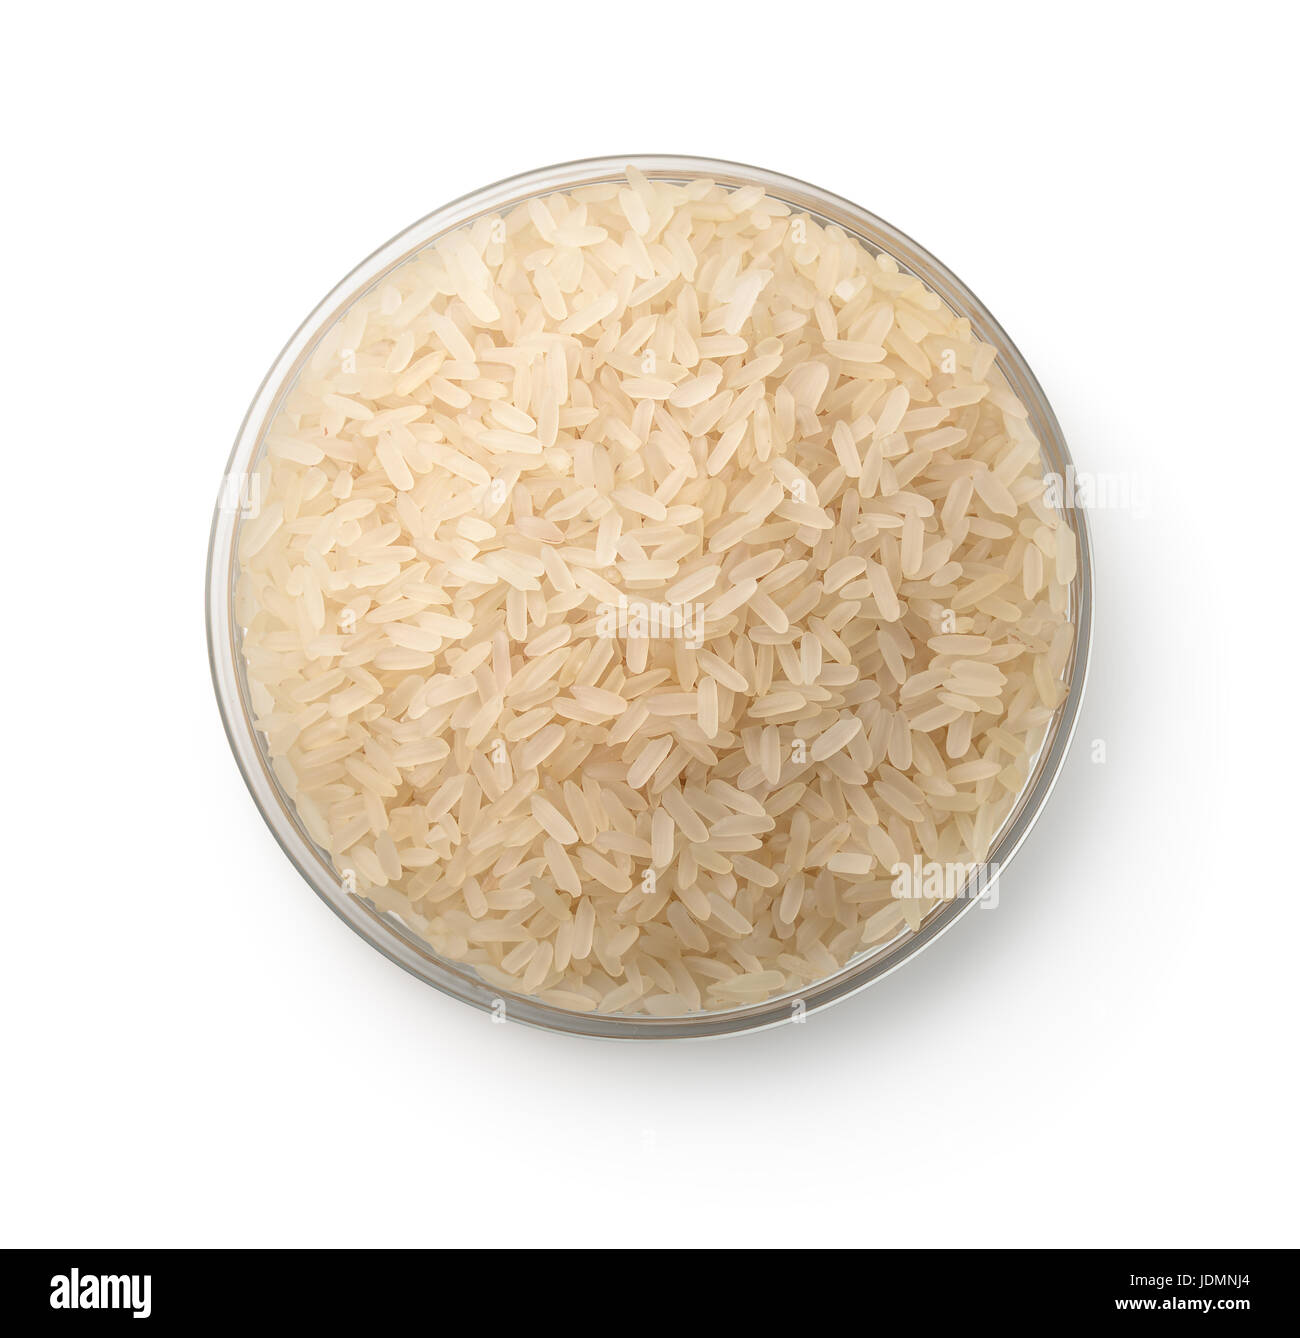 Vista superior del recipiente con arroz crudo aislado en blanco Foto de stock